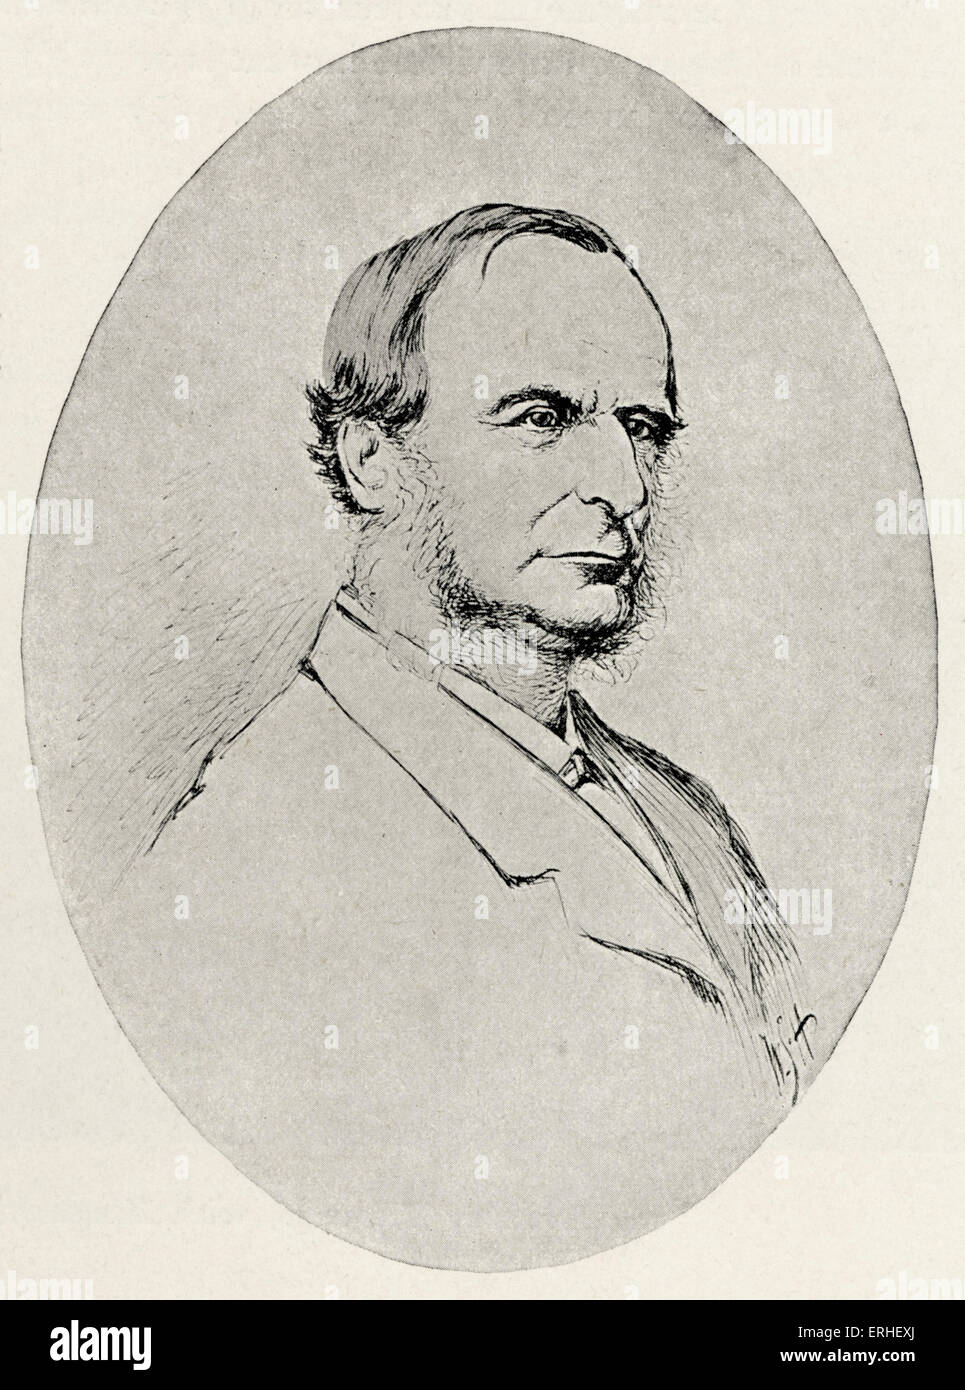 Charles Kingsley - auteur anglais 1819-1875. Dessin, plume et encre à partir de la photographie par W.H. Hunt Banque D'Images